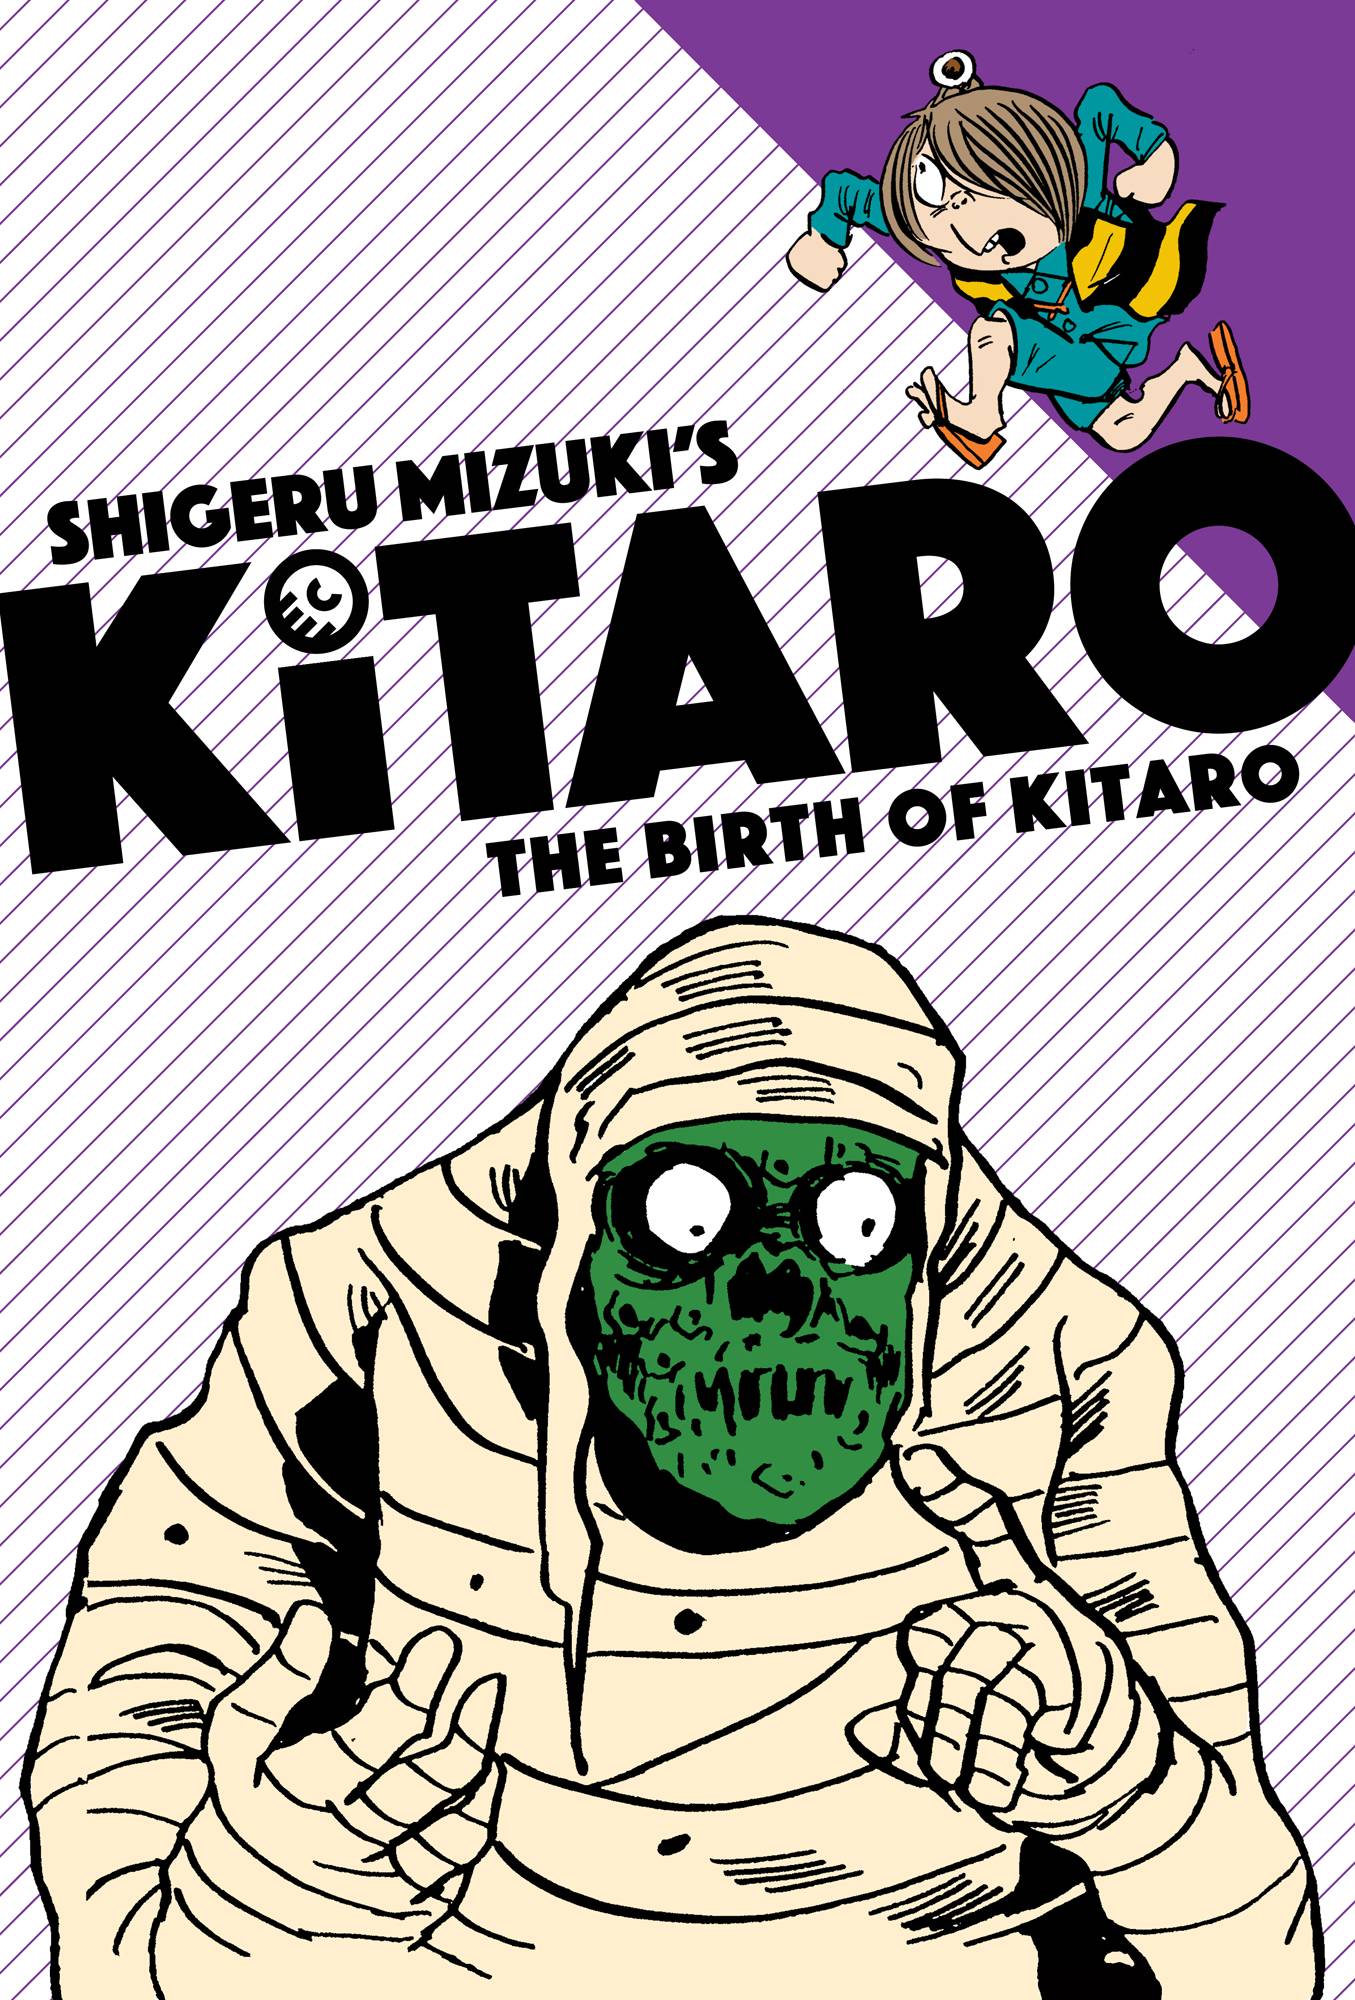 Shigeru Mizuki'S Kitaro Vol. #1 The Birth Of Kitaro